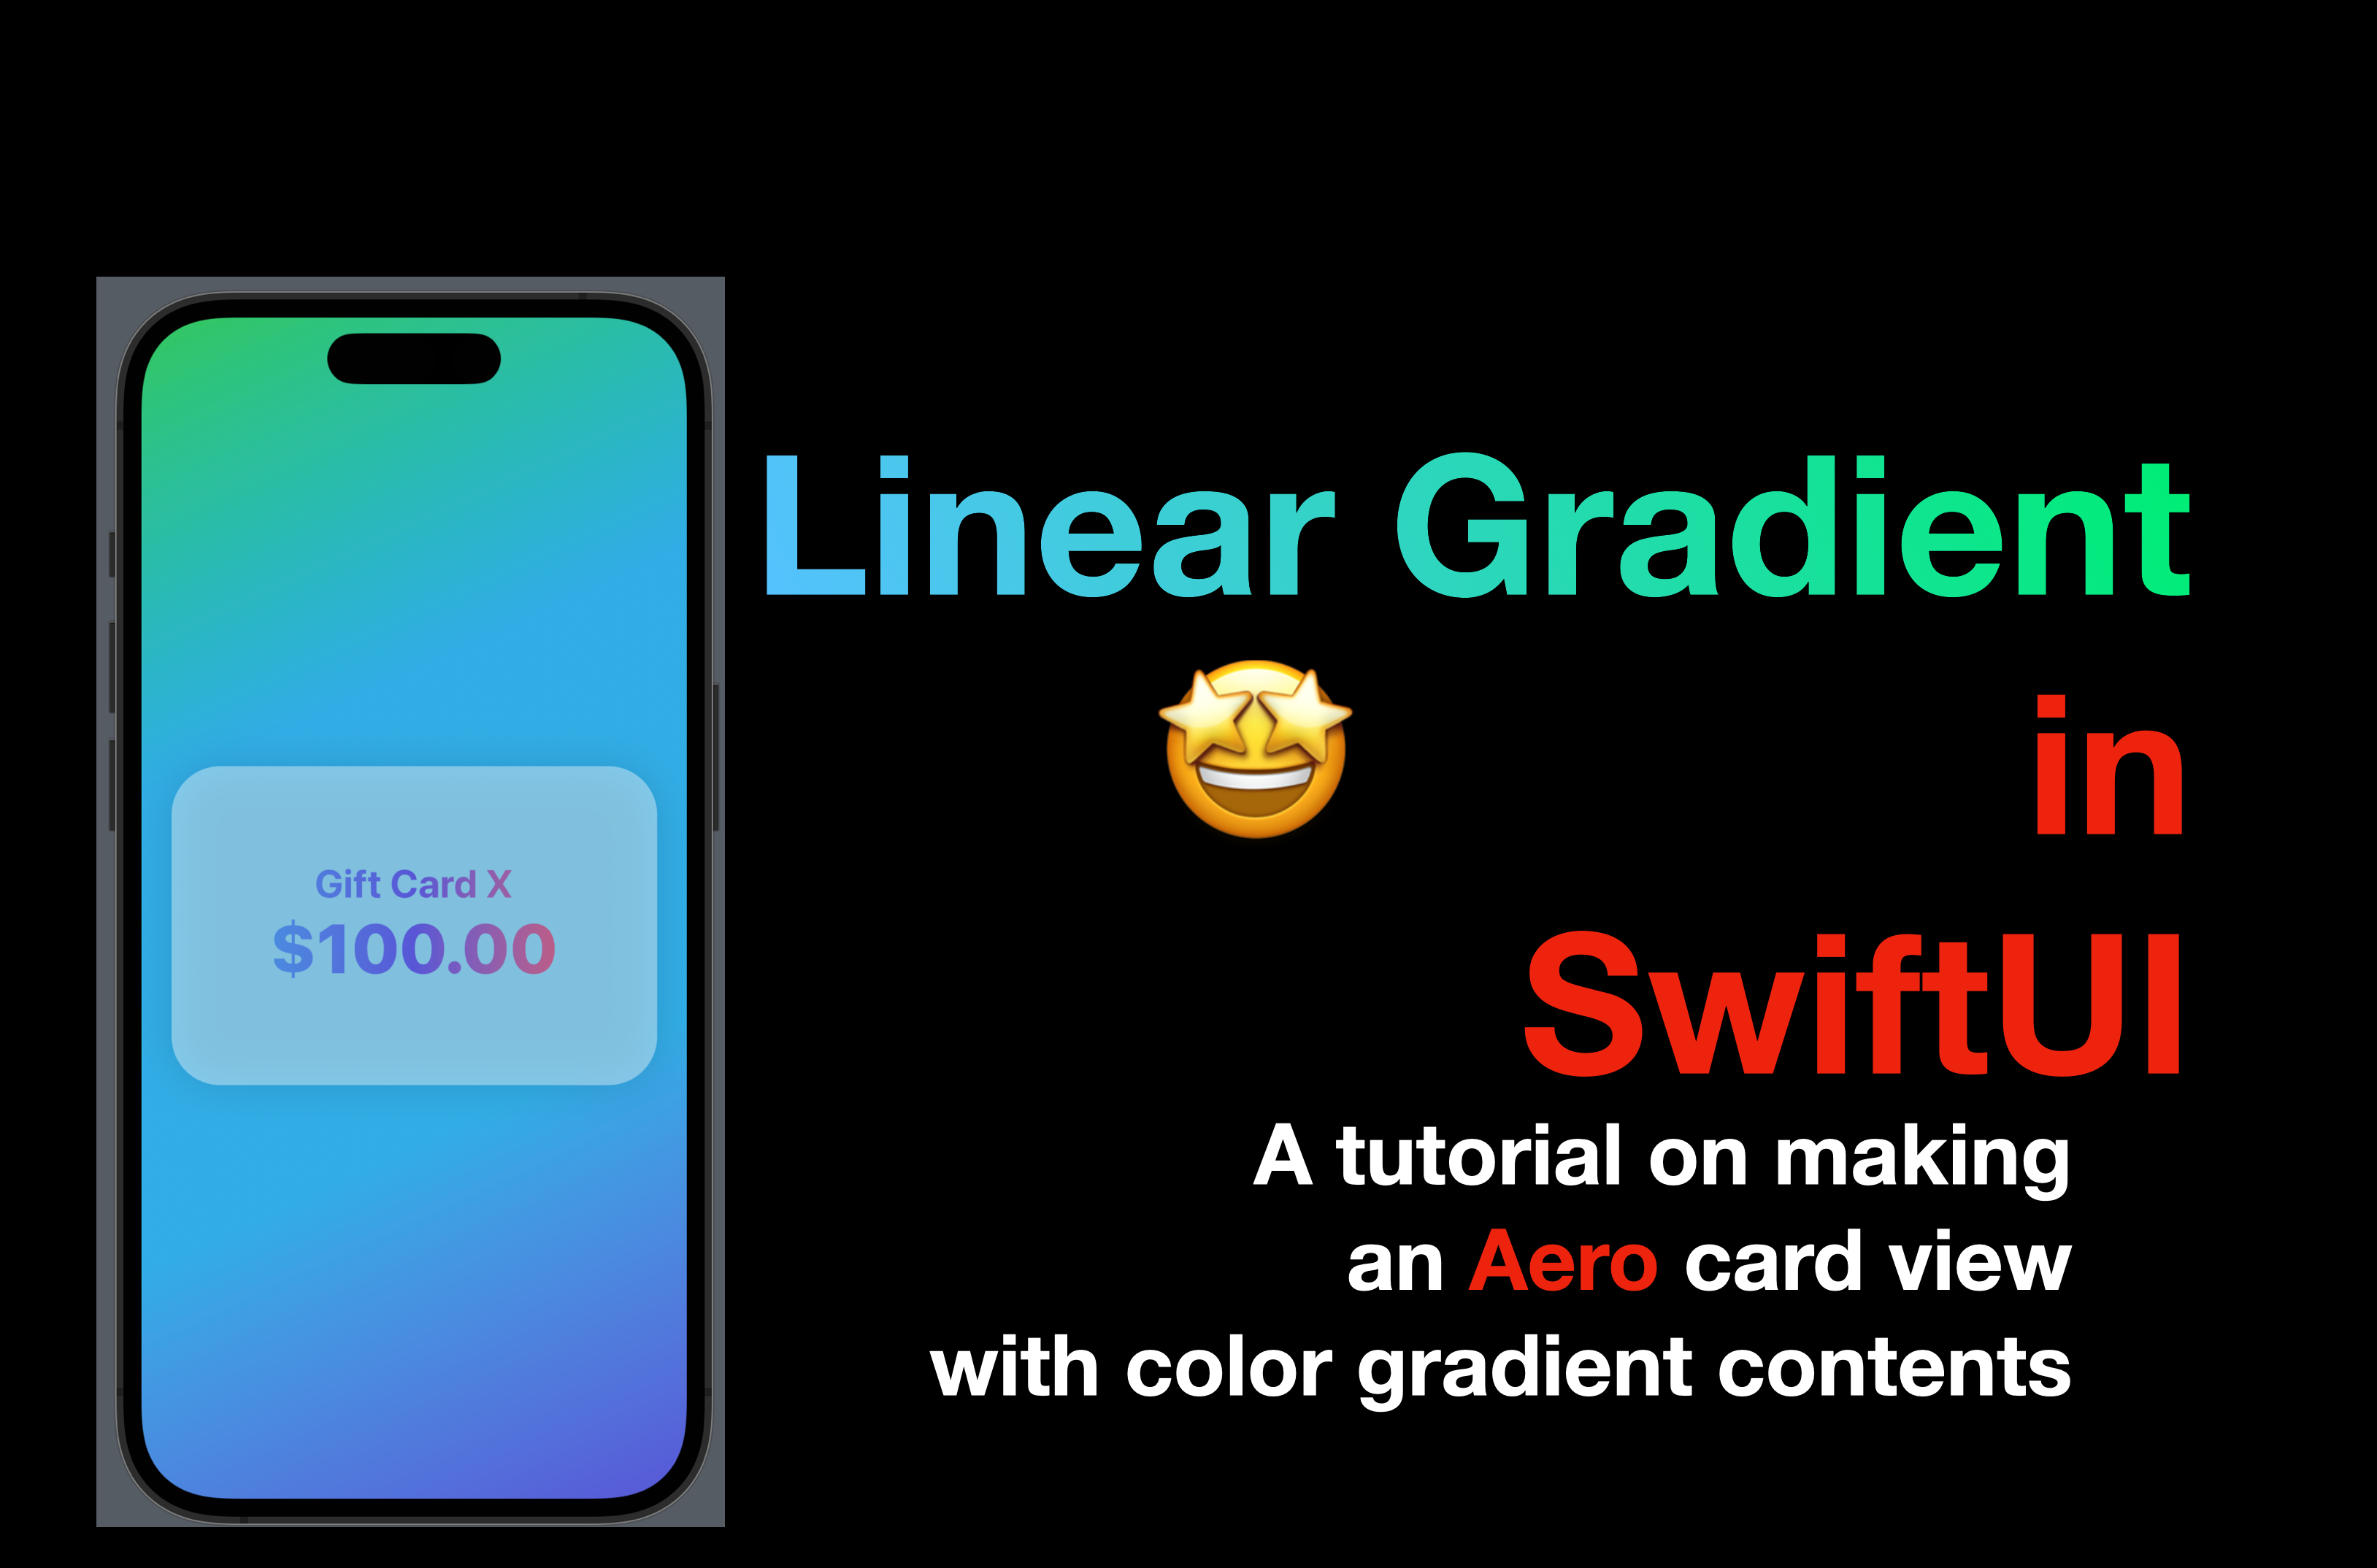 Gradient trong SwiftUI là một chủ đề rất thú vị và hấp dẫn cho các nhà phát triển ứng dụng di động. Bạn có muốn xem hình ảnh liên quan đến chủ đề này để hiểu rõ hơn về cách áp dụng gradient vào các giao diện người dùng hiện đại?